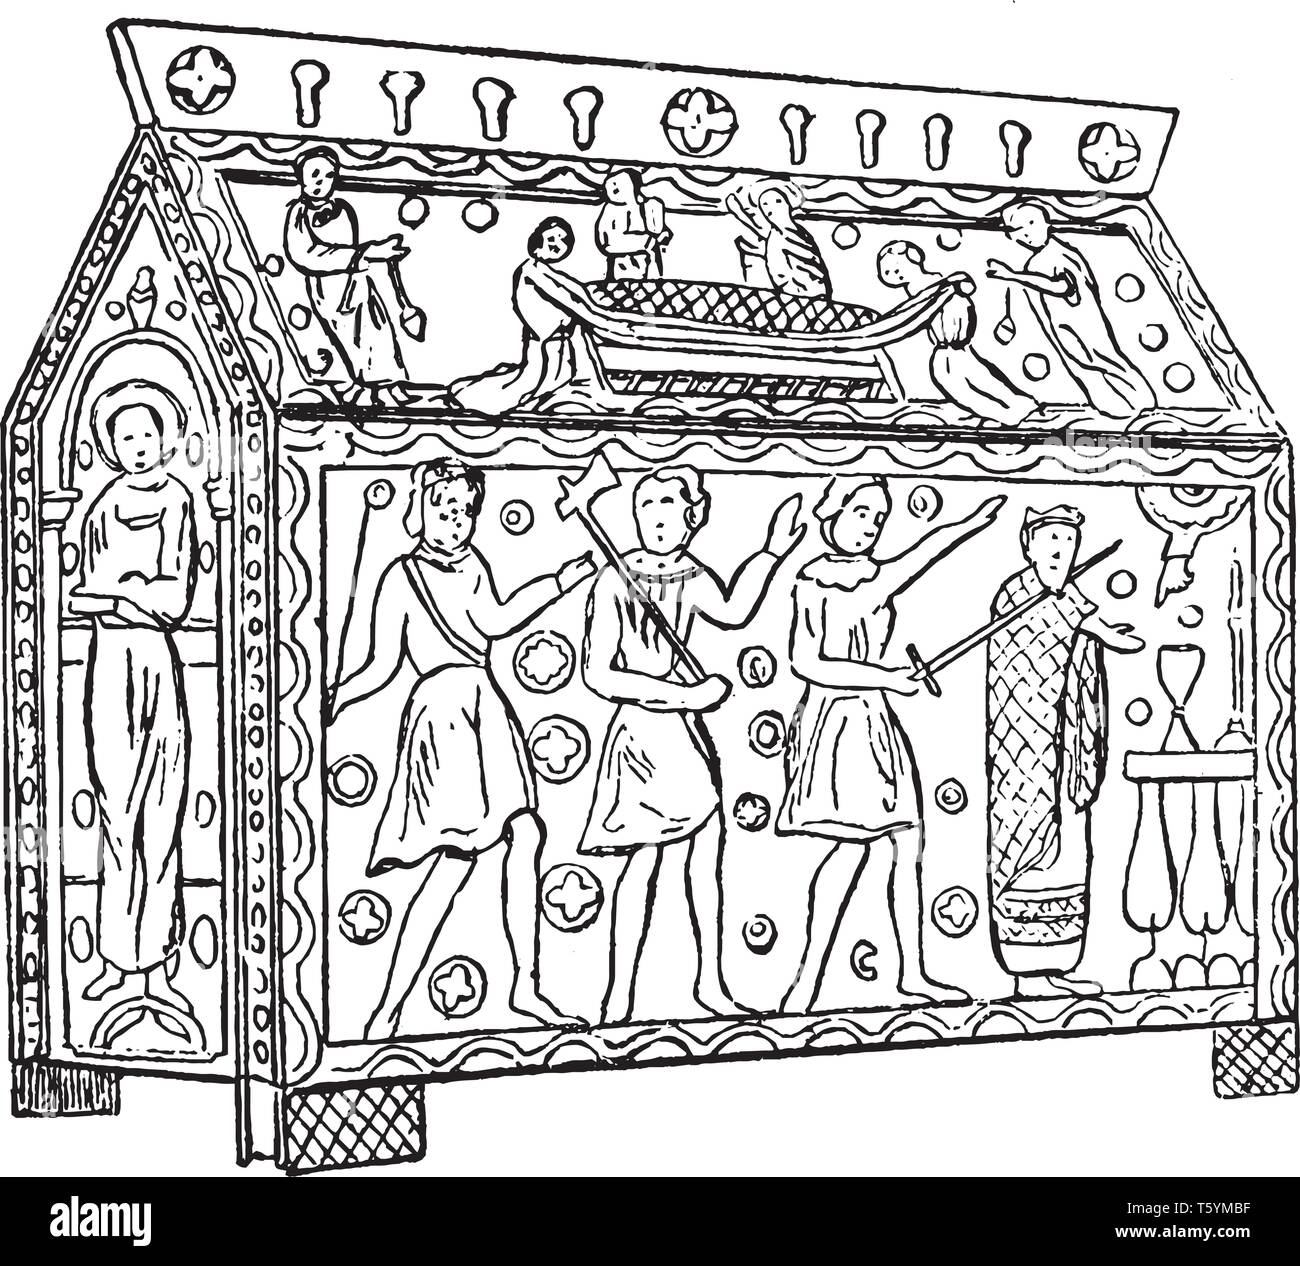 Santuario de Etherbert era el rey de los sajones y Oriental anteriormente en el altar mayor de la catedral de Hereford, grabado o dibujo de línea vintage illustrati Ilustración del Vector